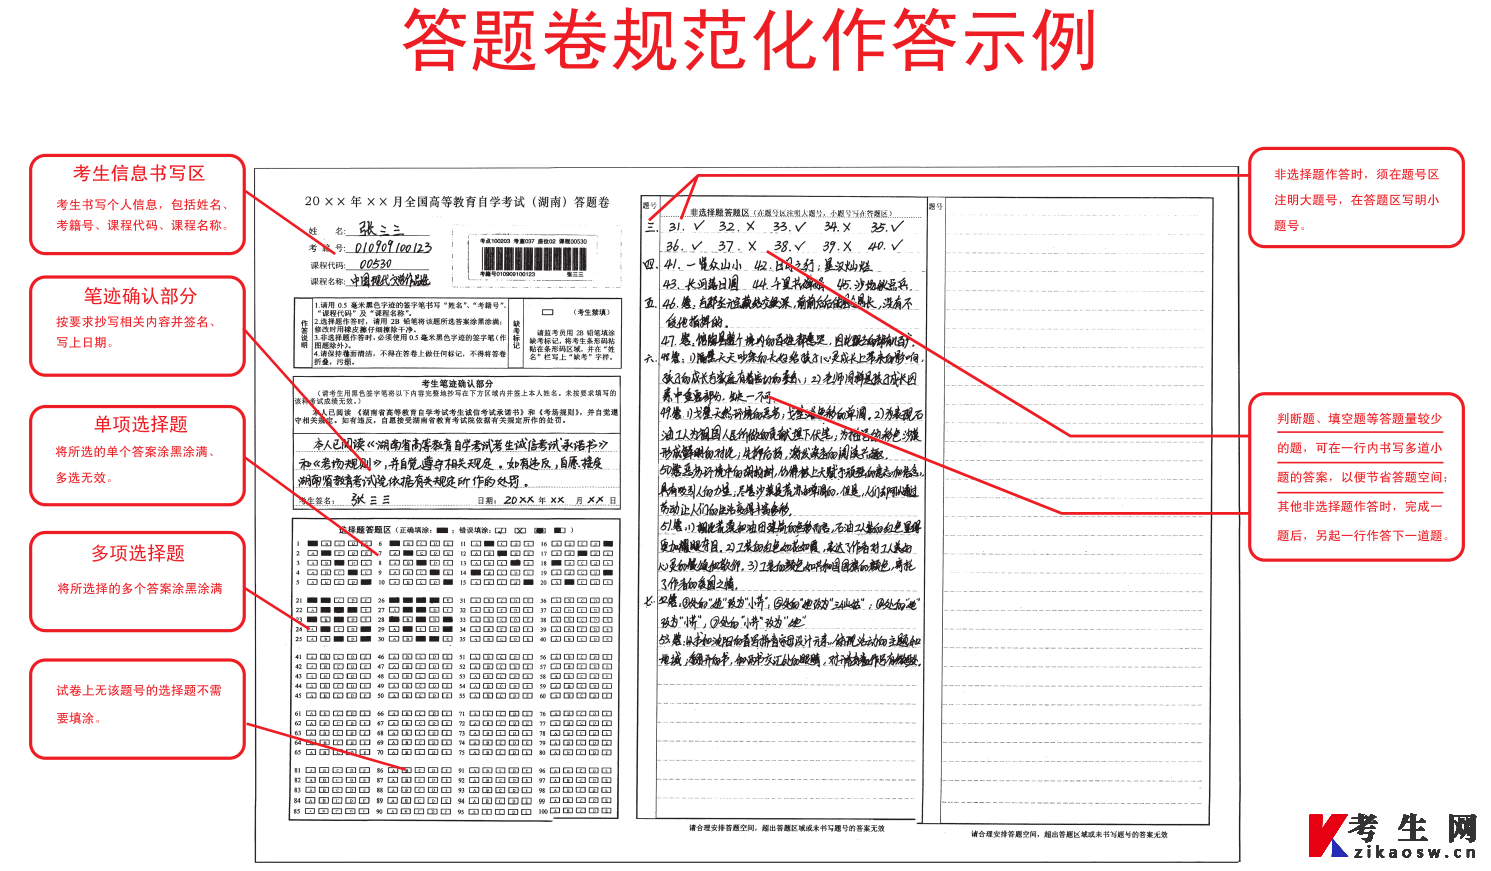 湖南省高等教育自学考试答题卡规范参考模板